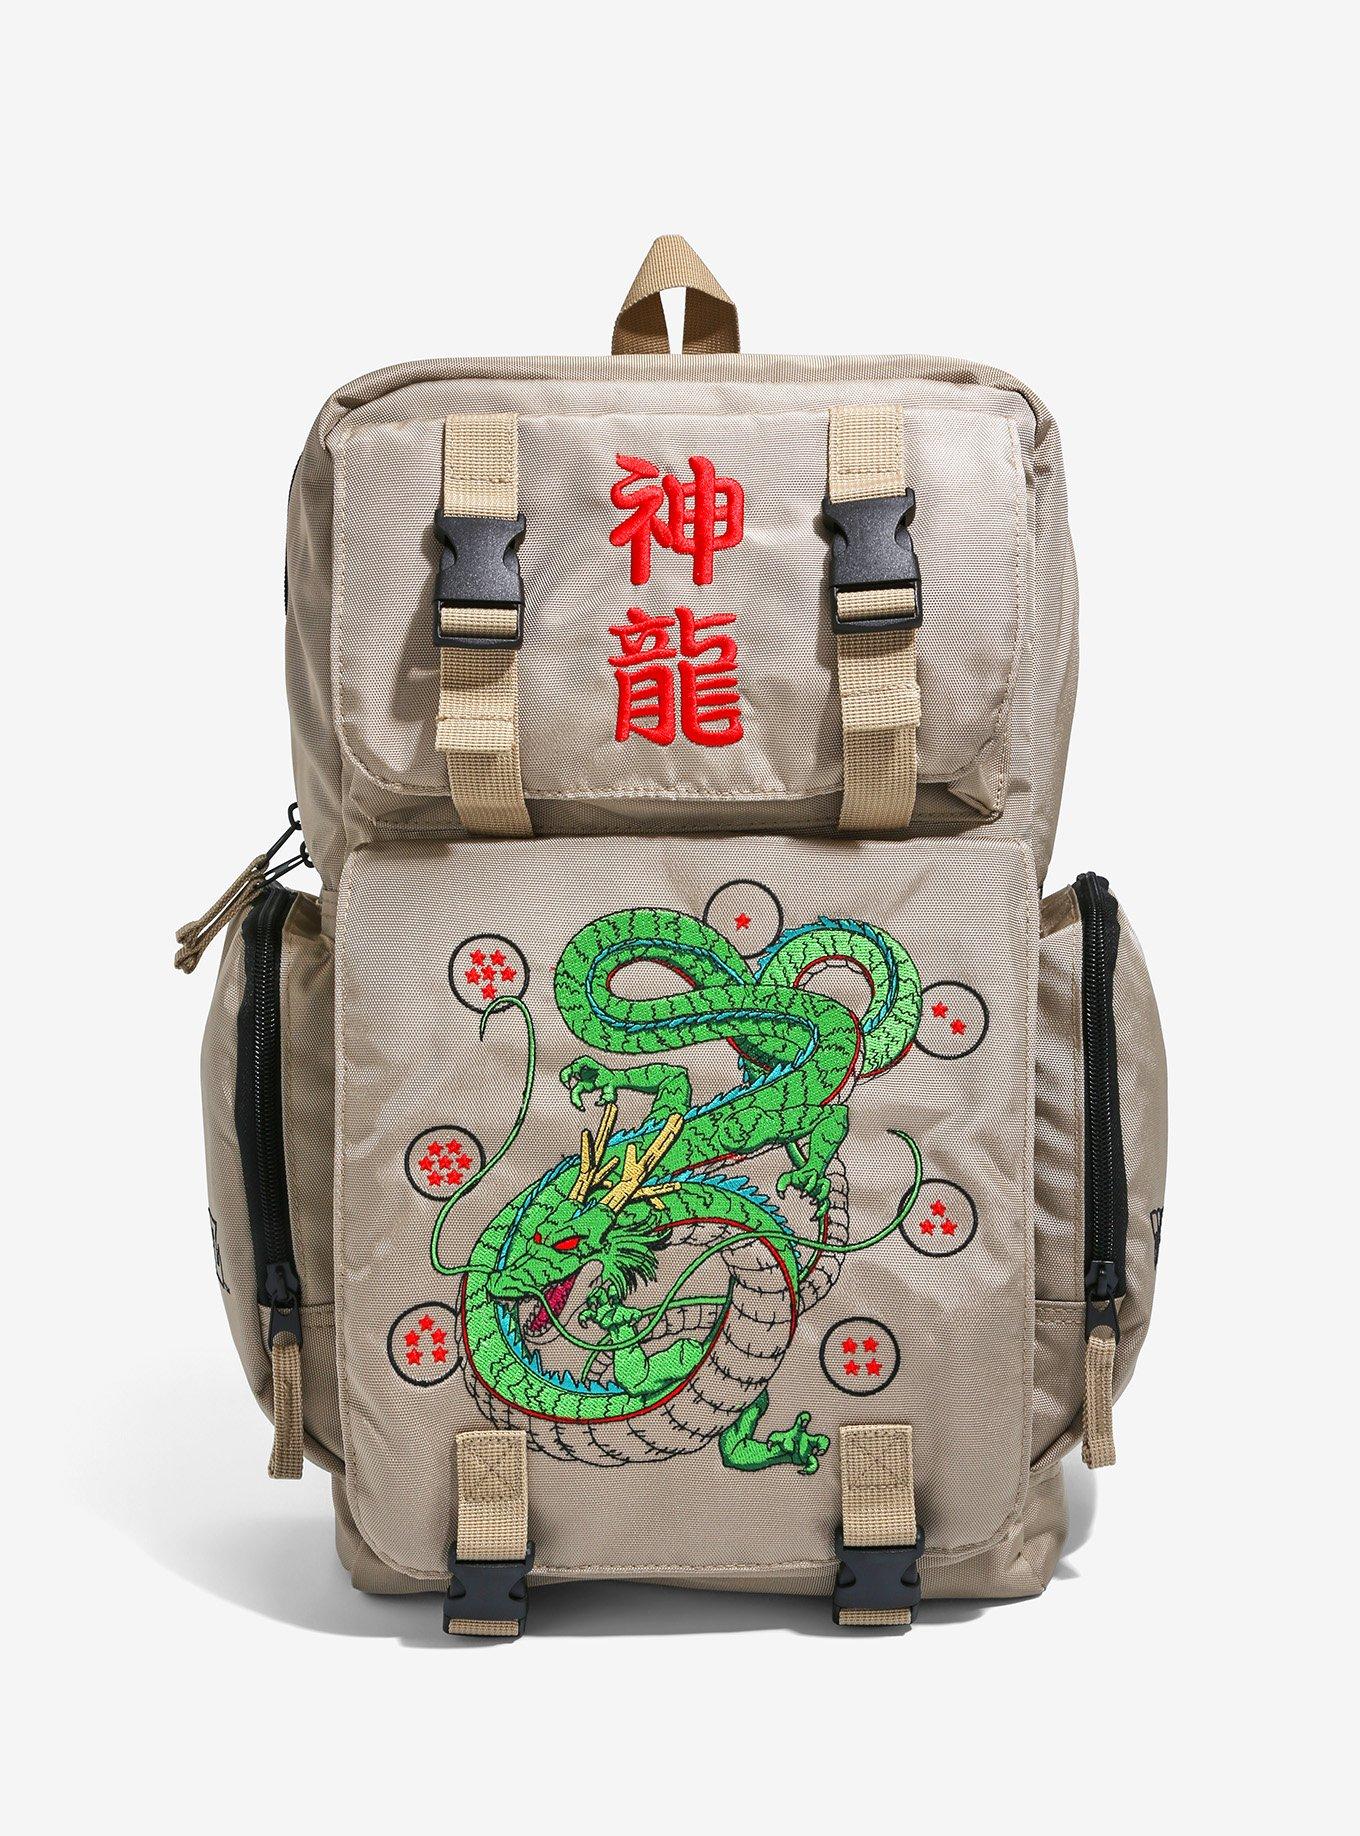 New Luminous Dragon Ball Backpack Usb Women Men Travel Backpack